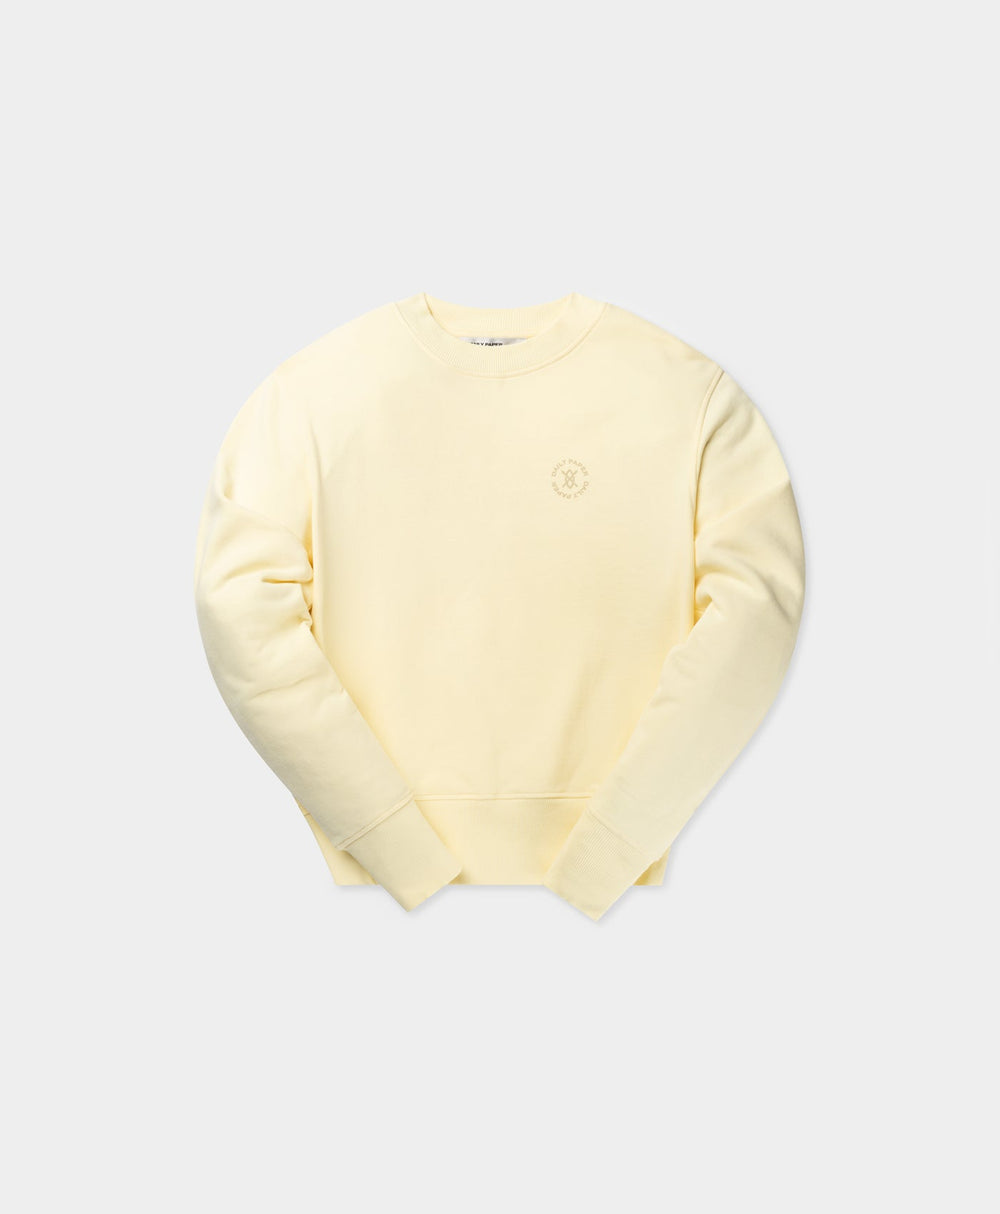 DP - Icing Yellow Circle Sweater - Packshot - Front